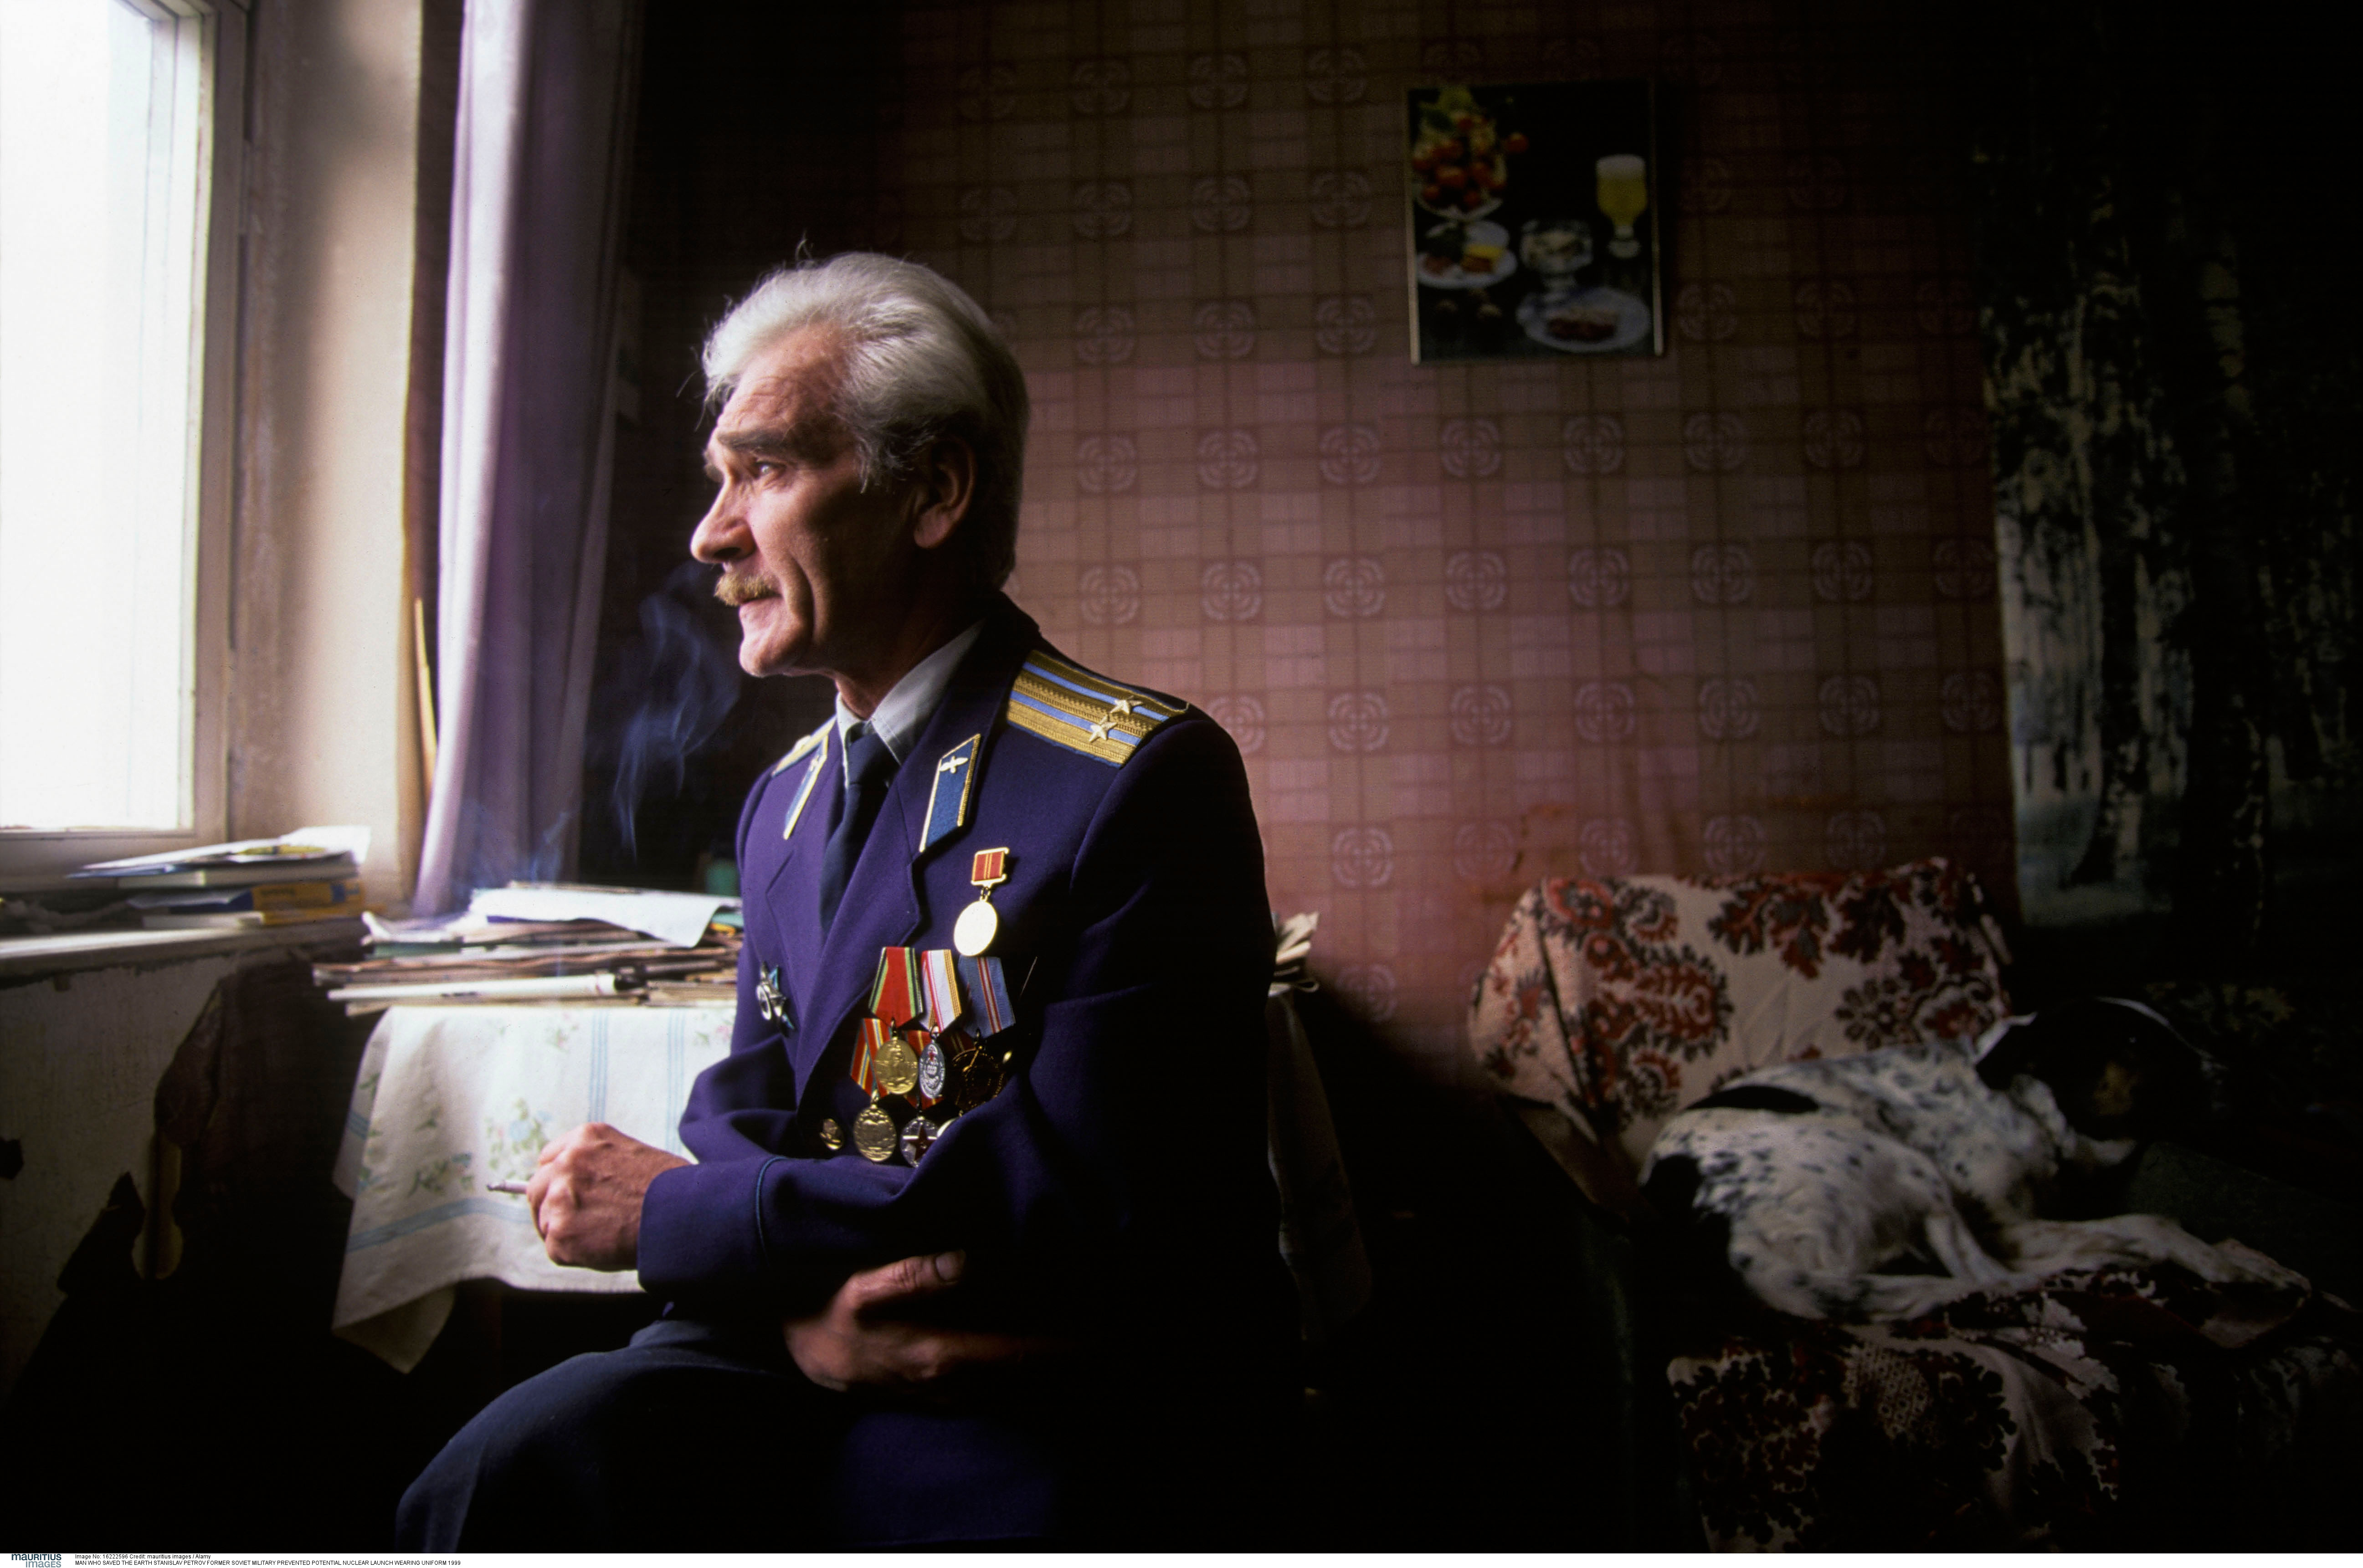 Ex-Sowjet-Offizier Petrow: „Held, der die Welt rettete“ im Alter von 77 Jahren gestorben